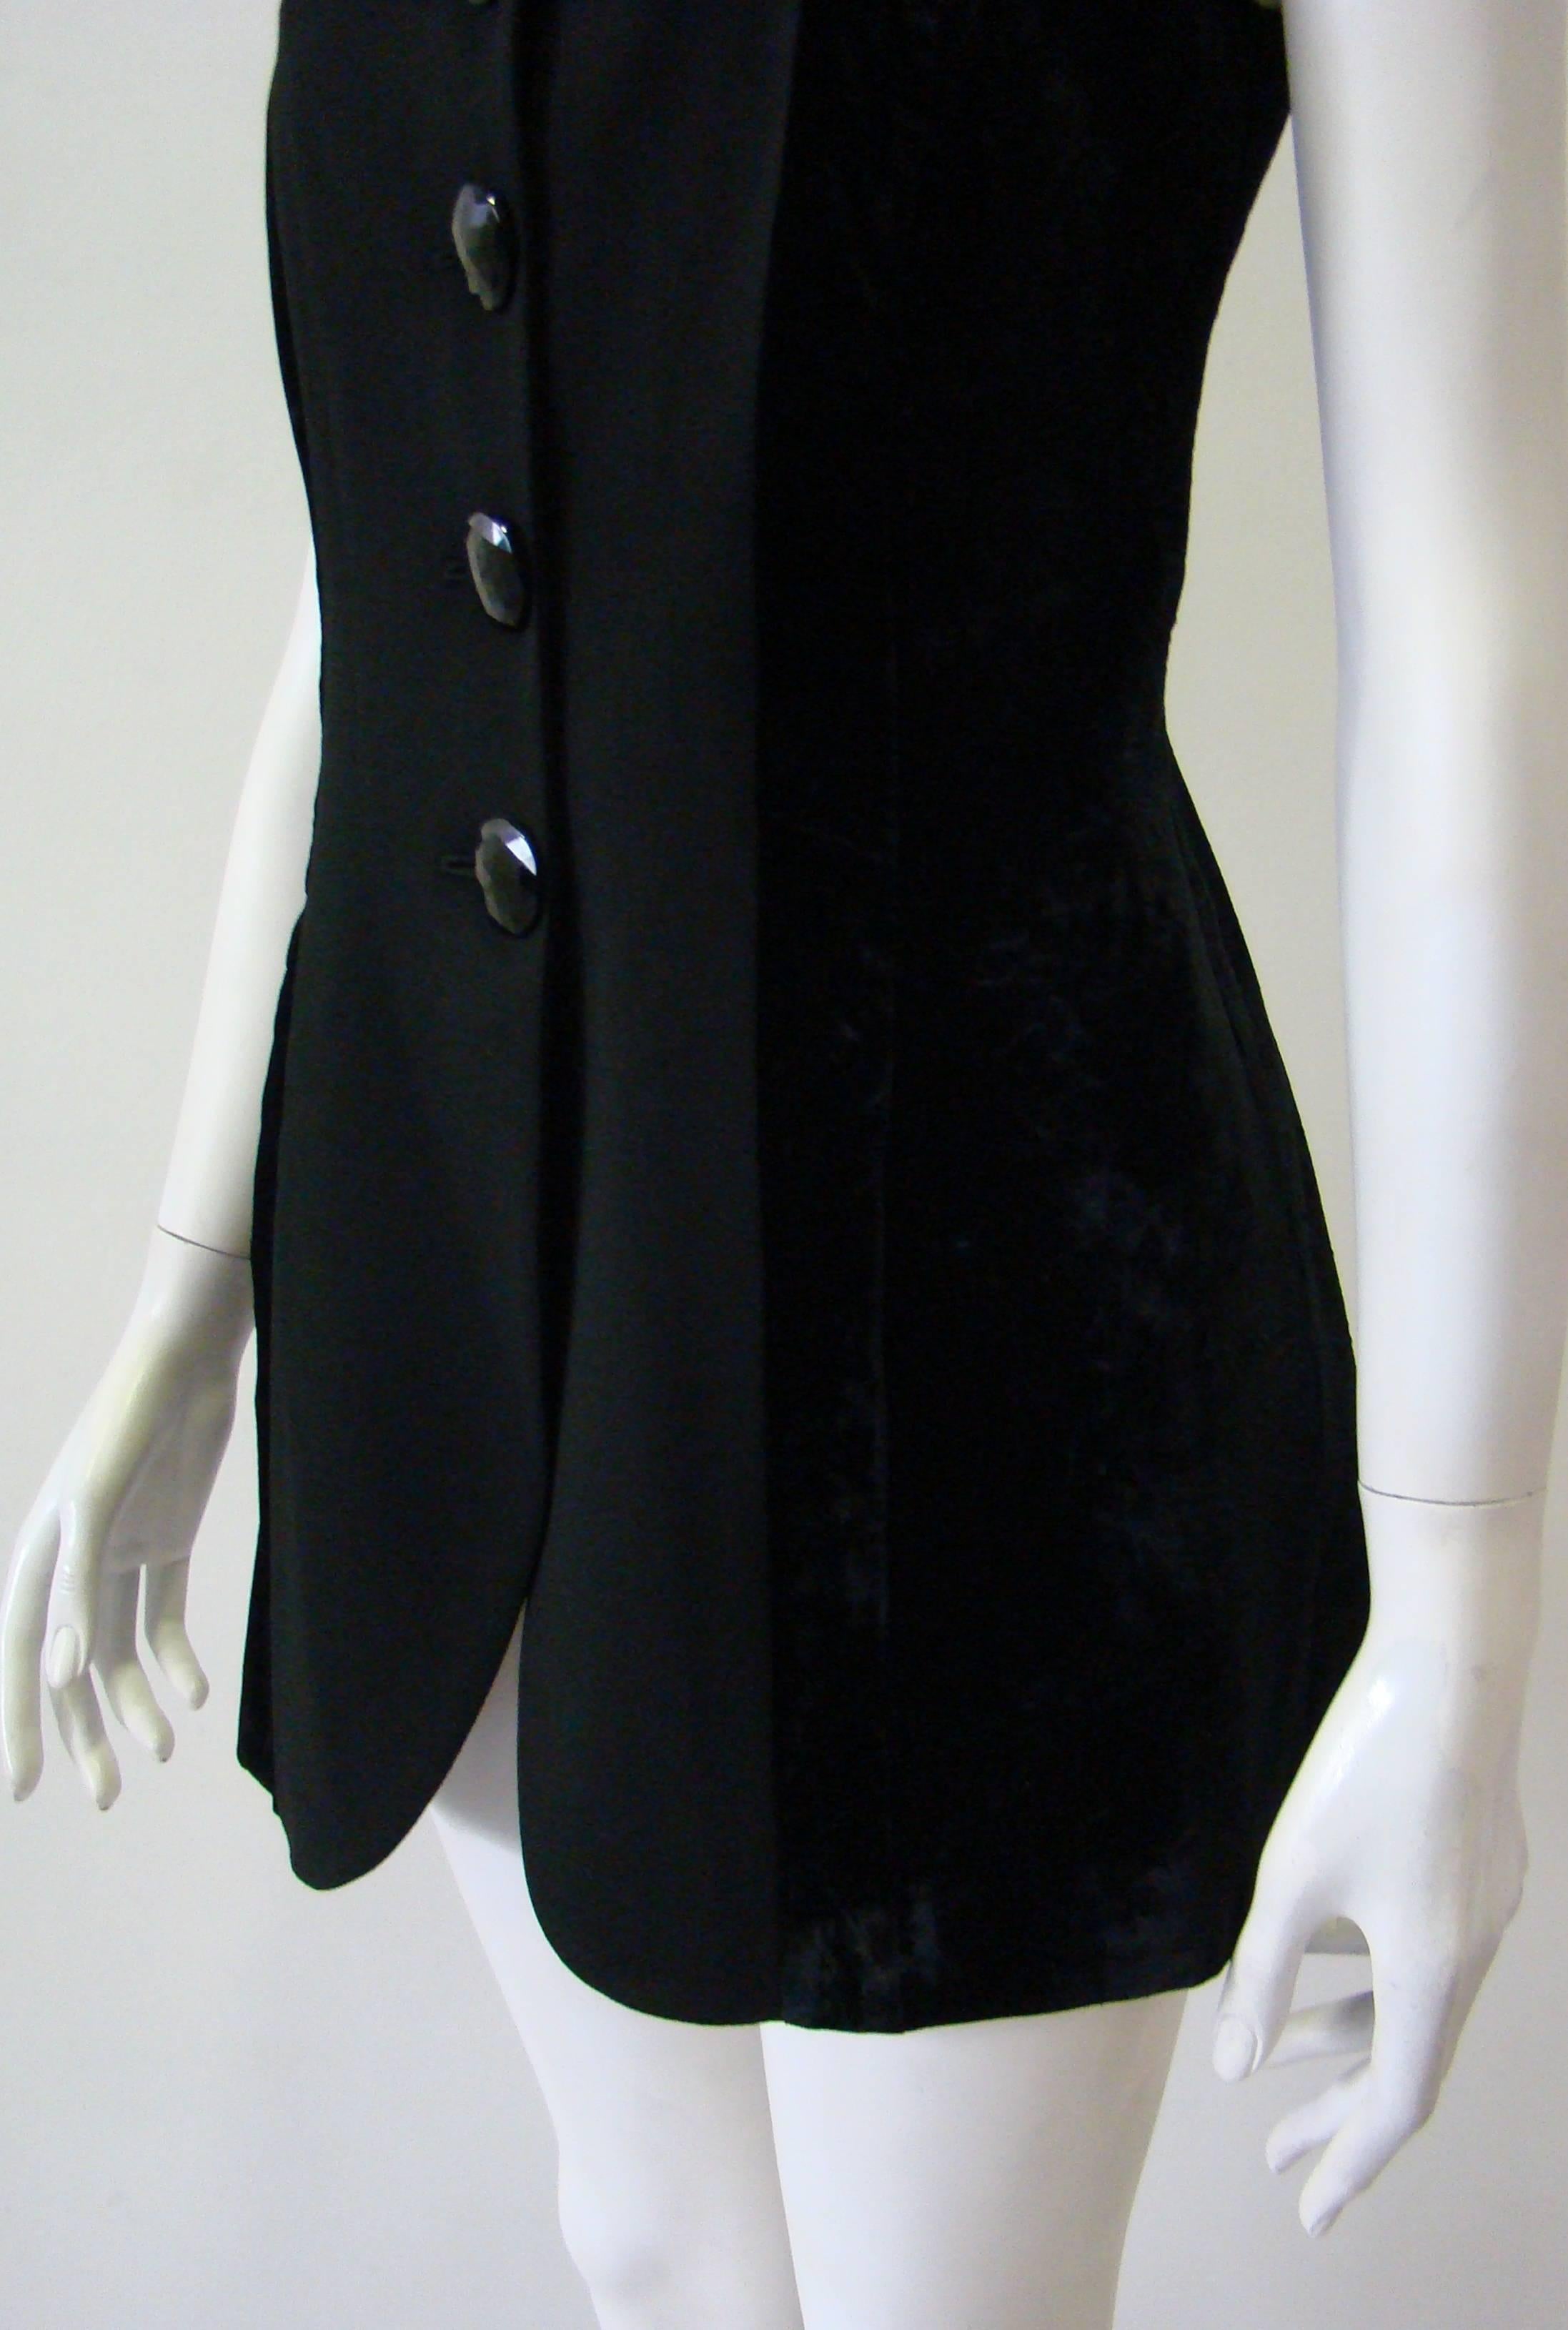 Black Rare Gianfranco Ferre Velvet Side Panels Waistcoat 1990's For Sale